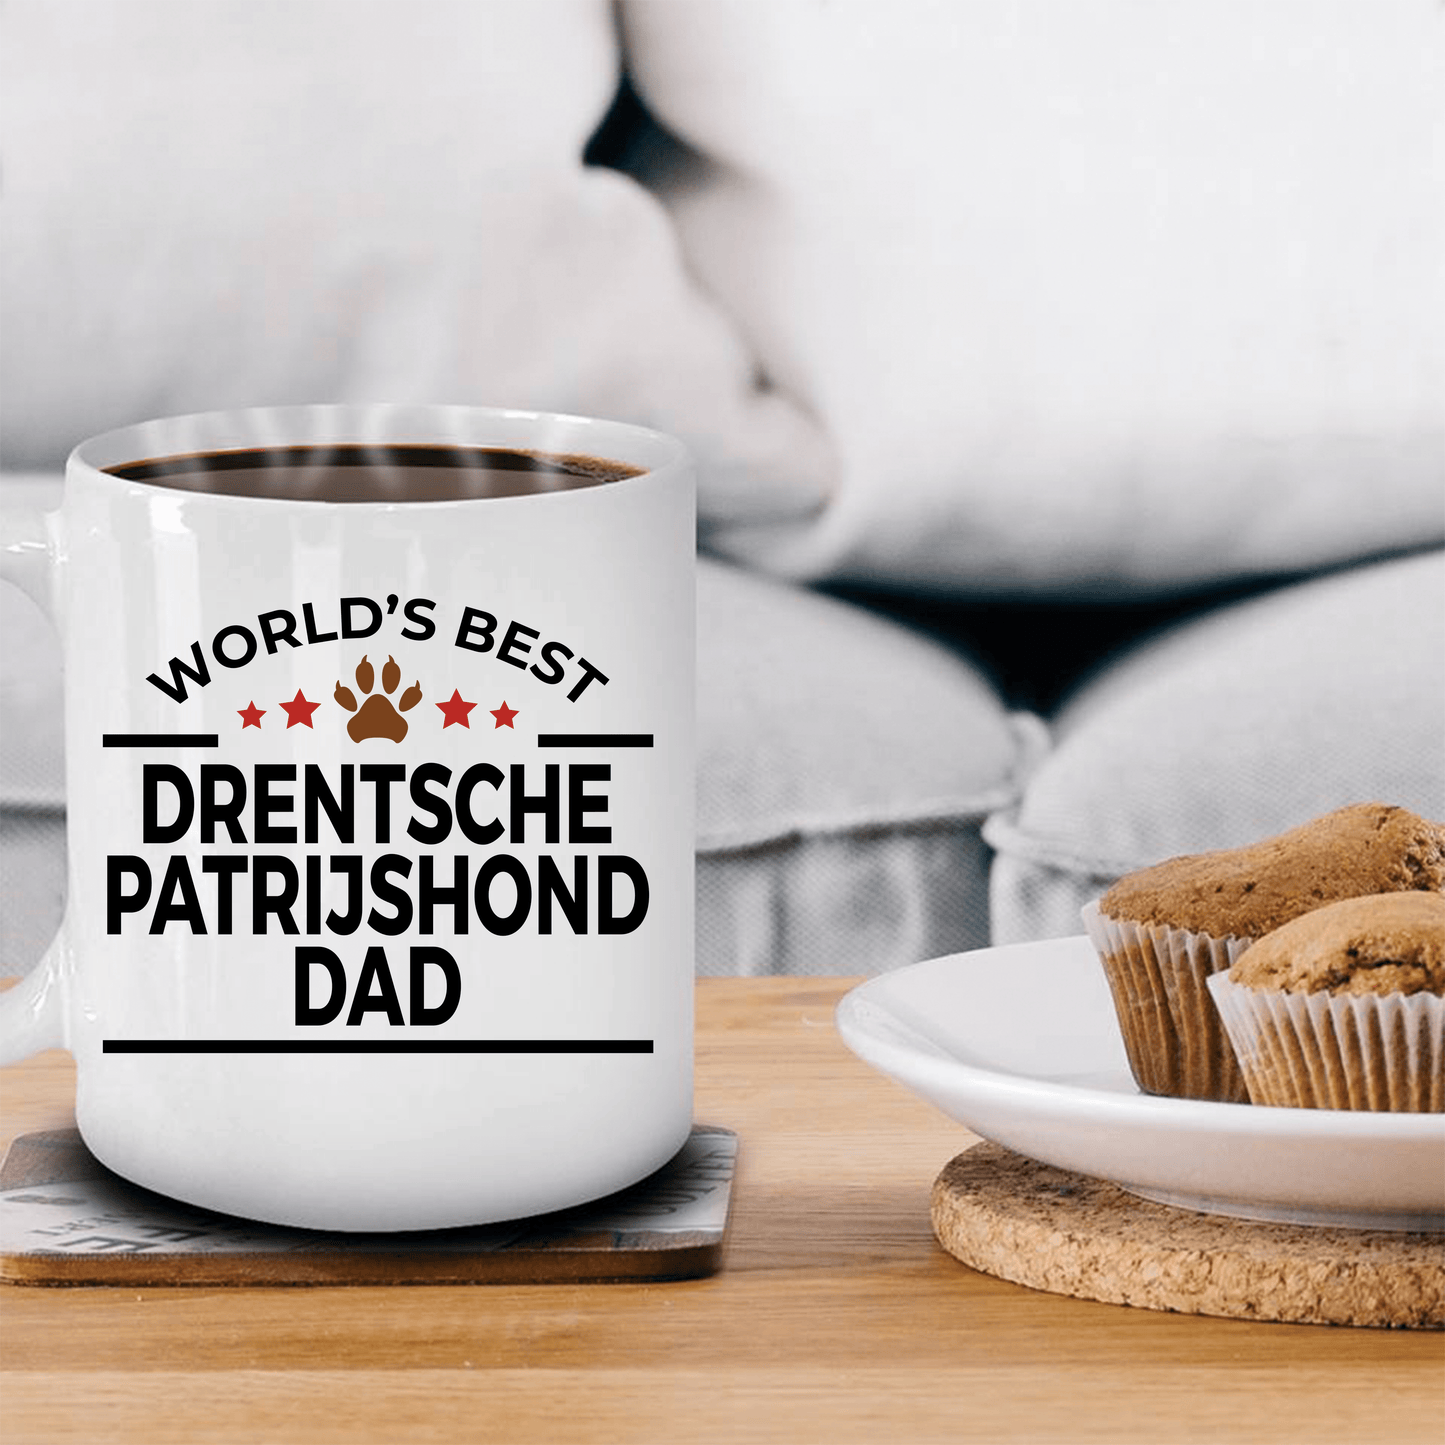 Drentsche Patrijshond Dog Lover Gift World's Best Dad Birthday Father's Day White Ceramic Coffee Mug